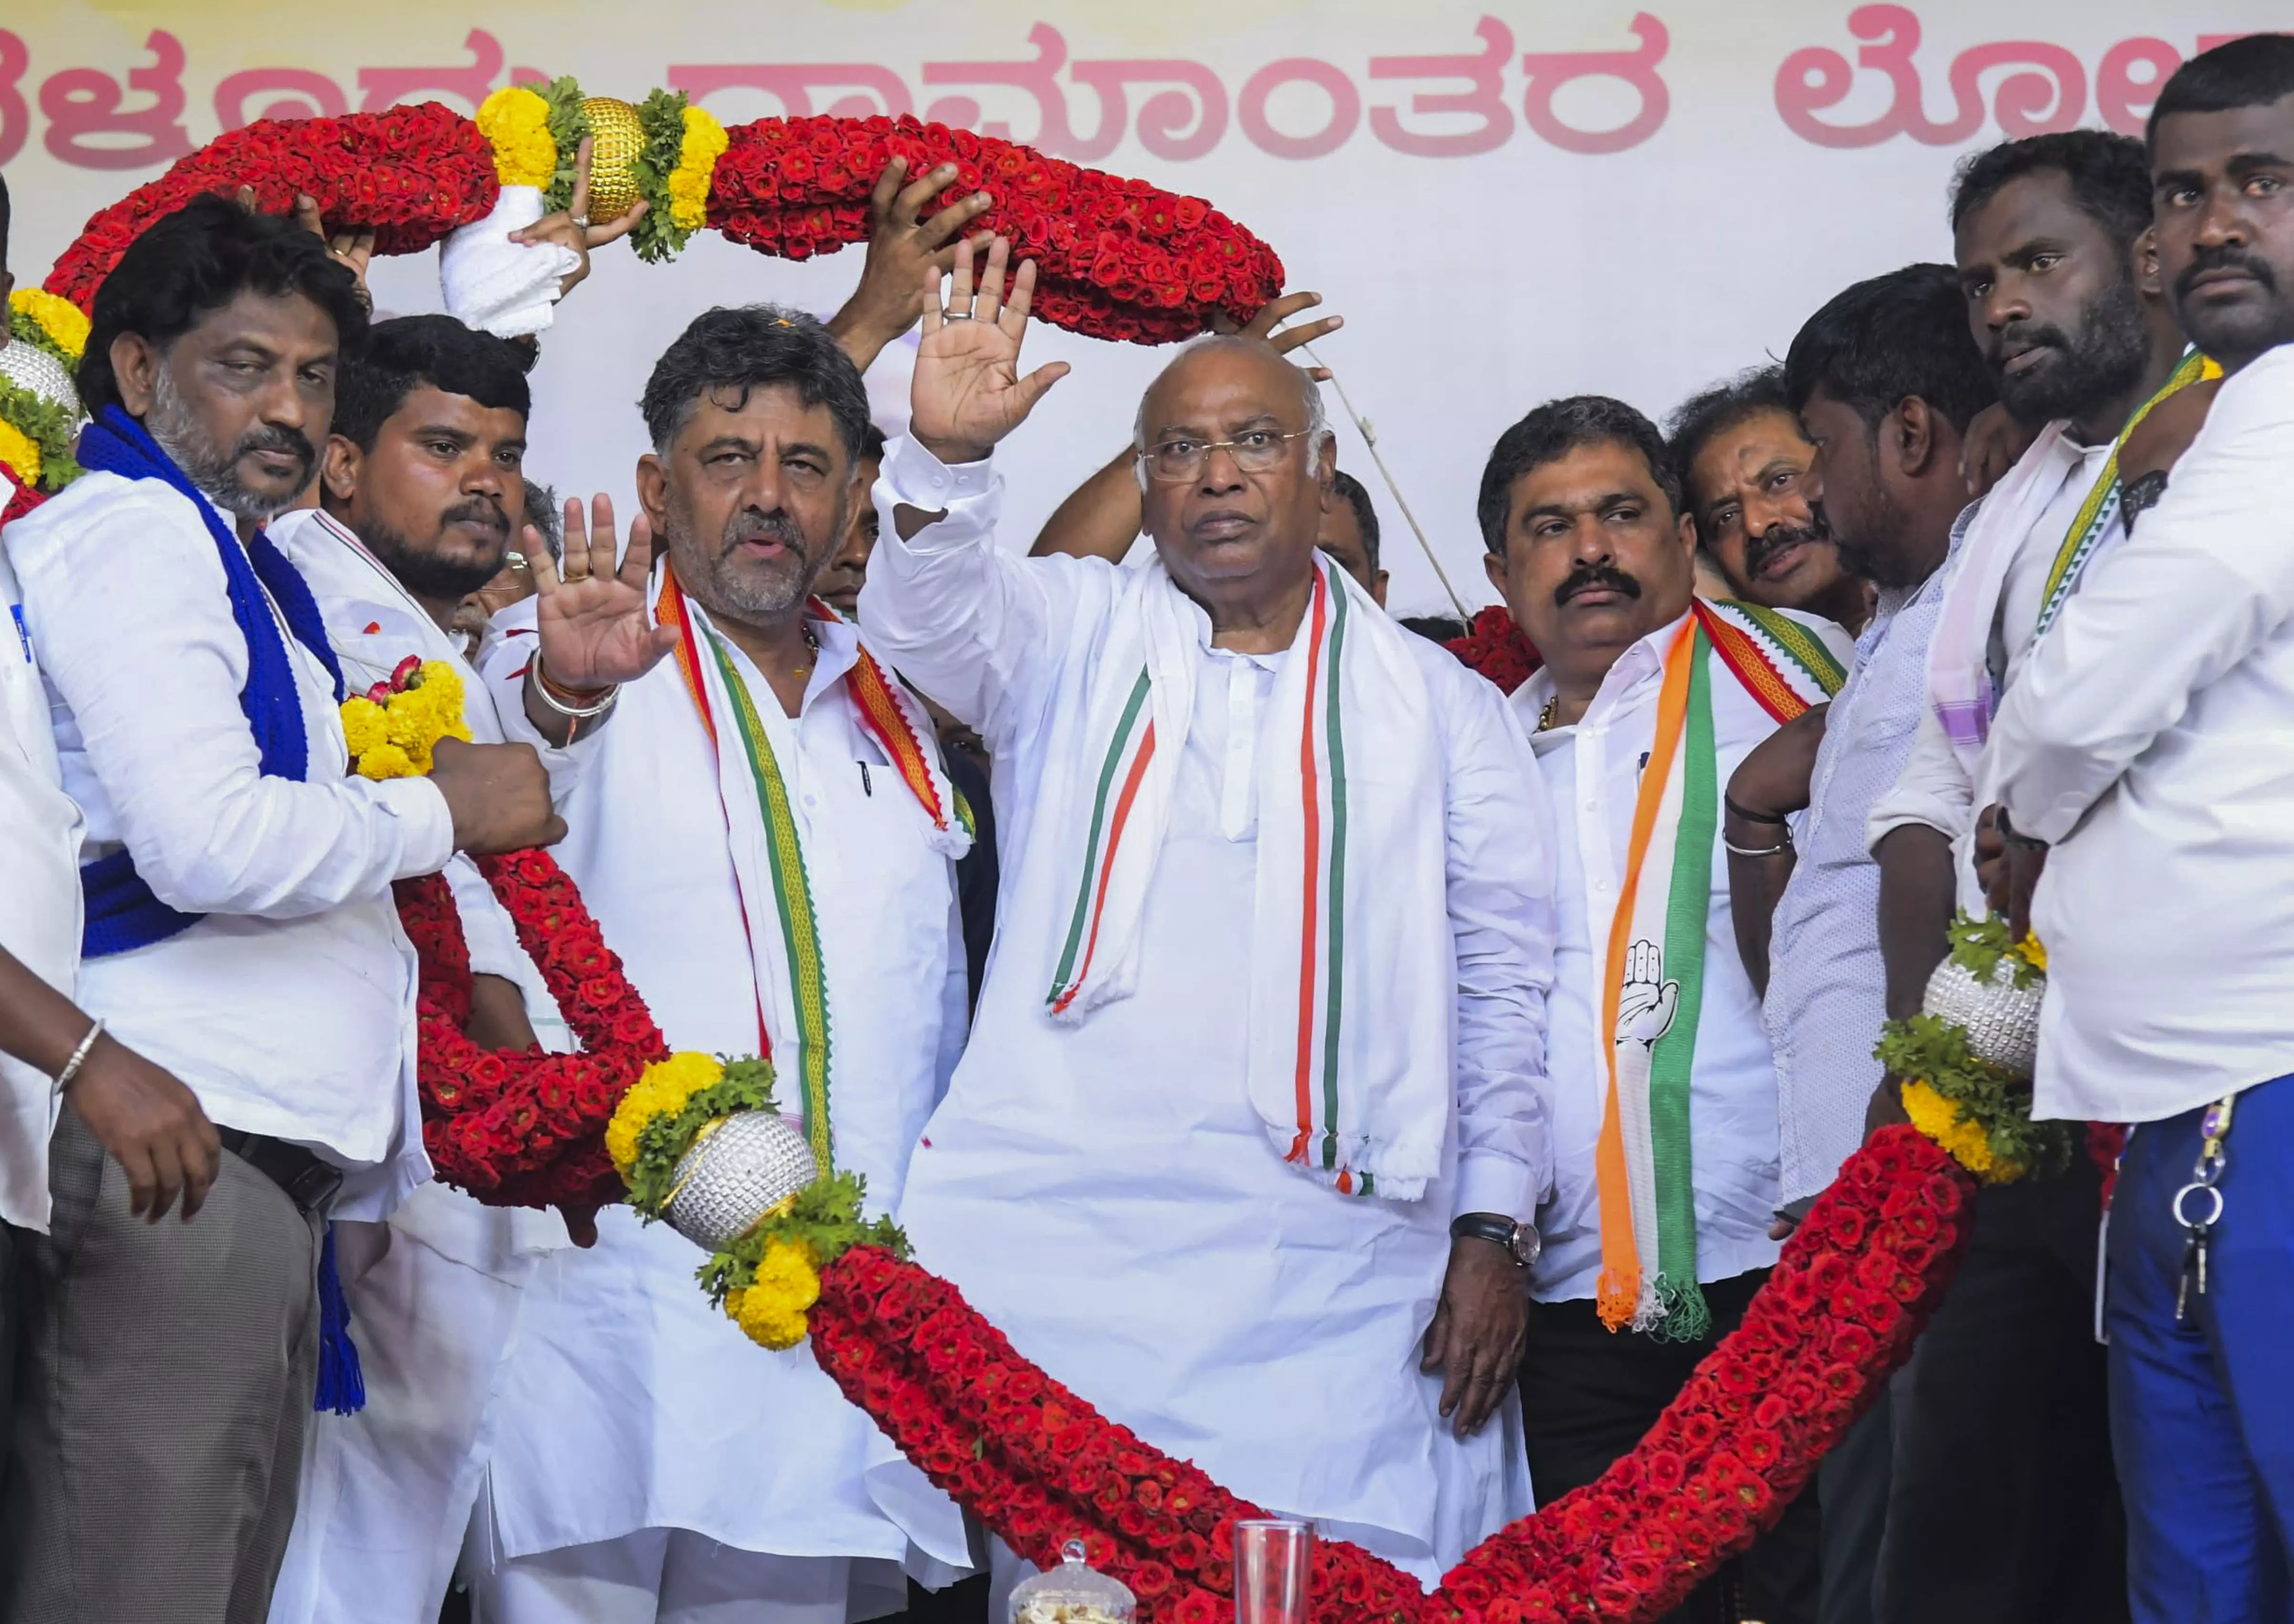 LS polls: In Karnataka, BJP faces stiffest challenge from Congress in 25 years